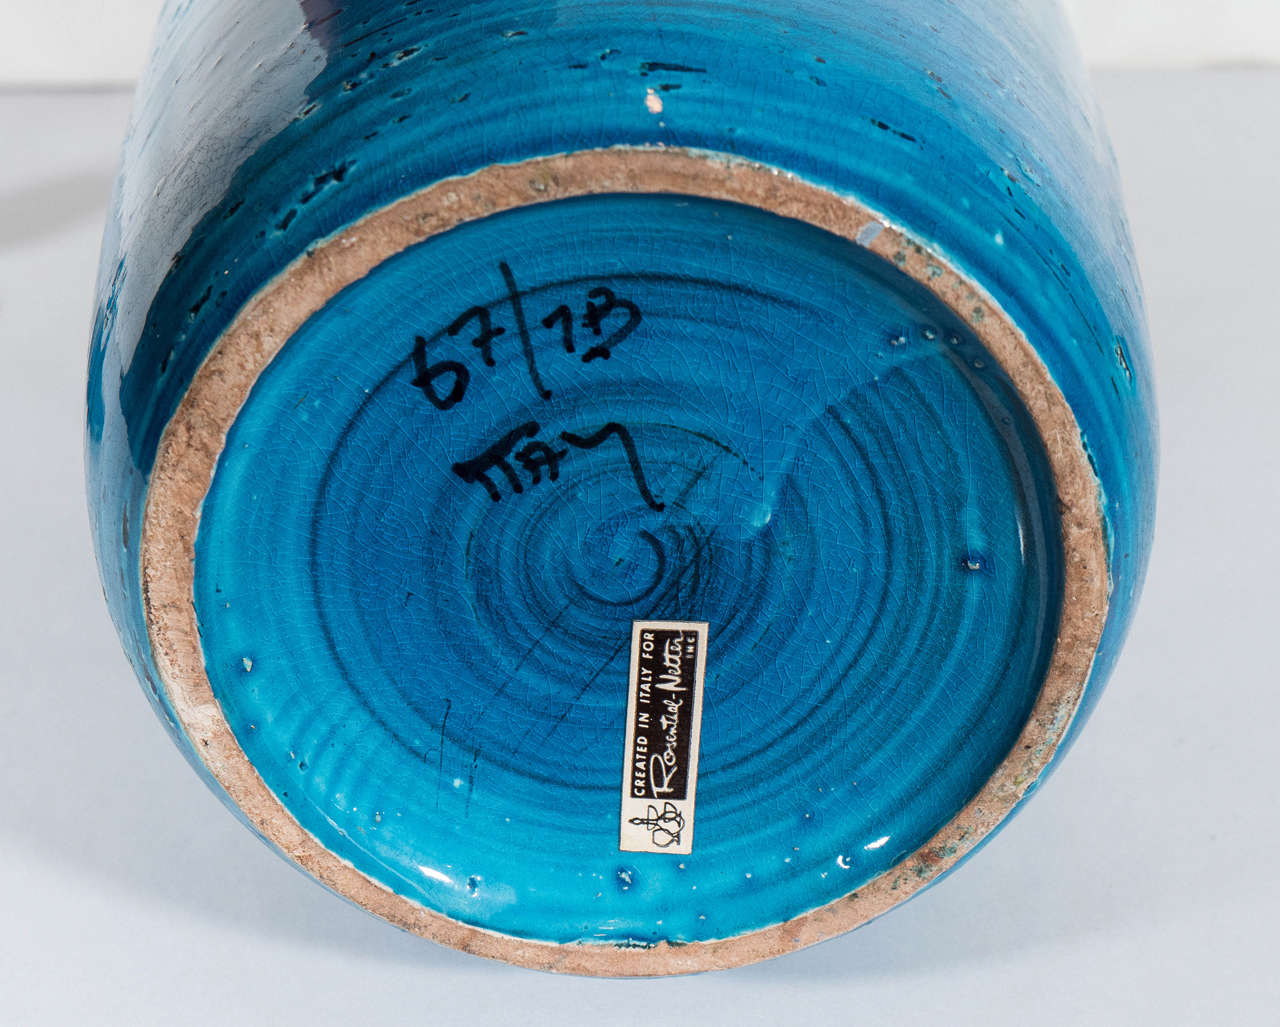 Rosenthal Netter Blue Ceramic Lidded Jar 1